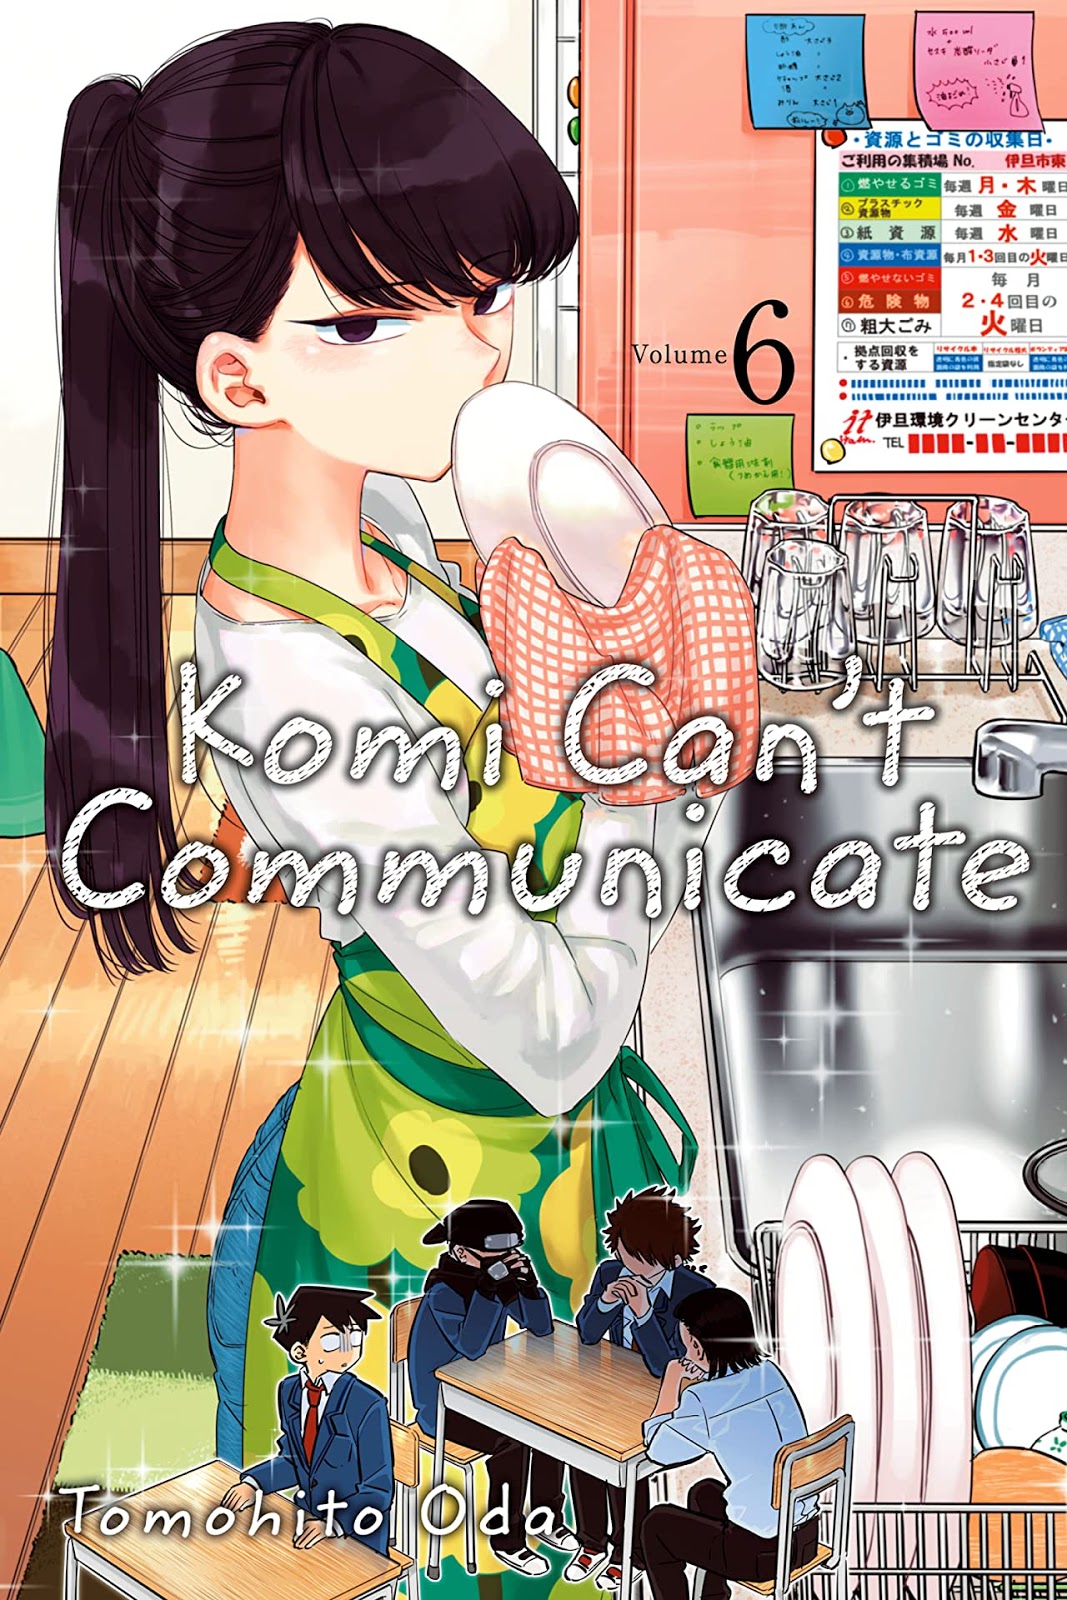 VIZ  Read Komi Can't Communicate, Chapter 416 - Explore VIZ